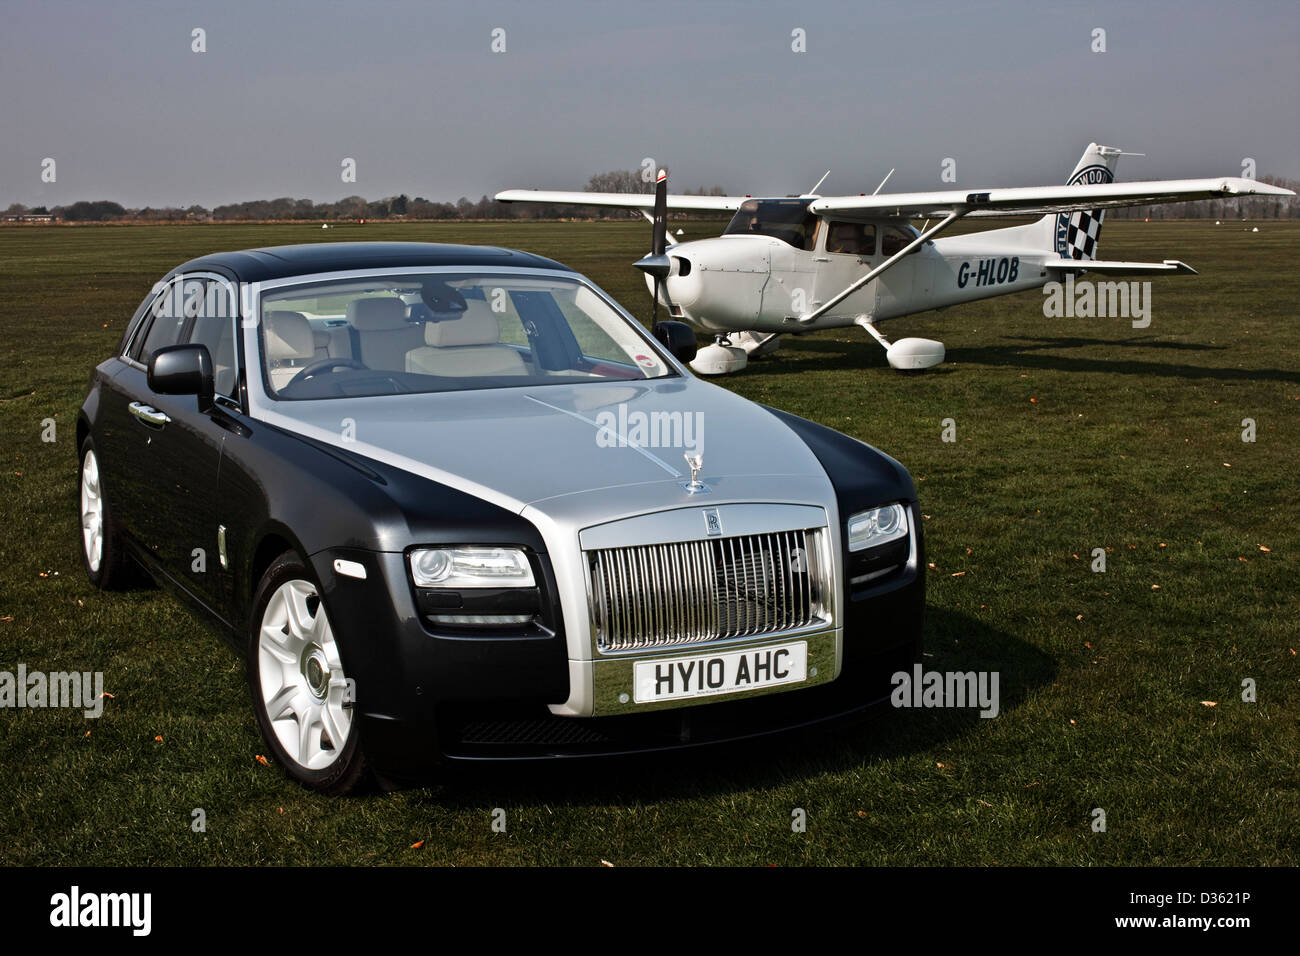 Rolls Royce Ghost berline de luxe, Goodwood, UK, 15 04 2010 Banque D'Images